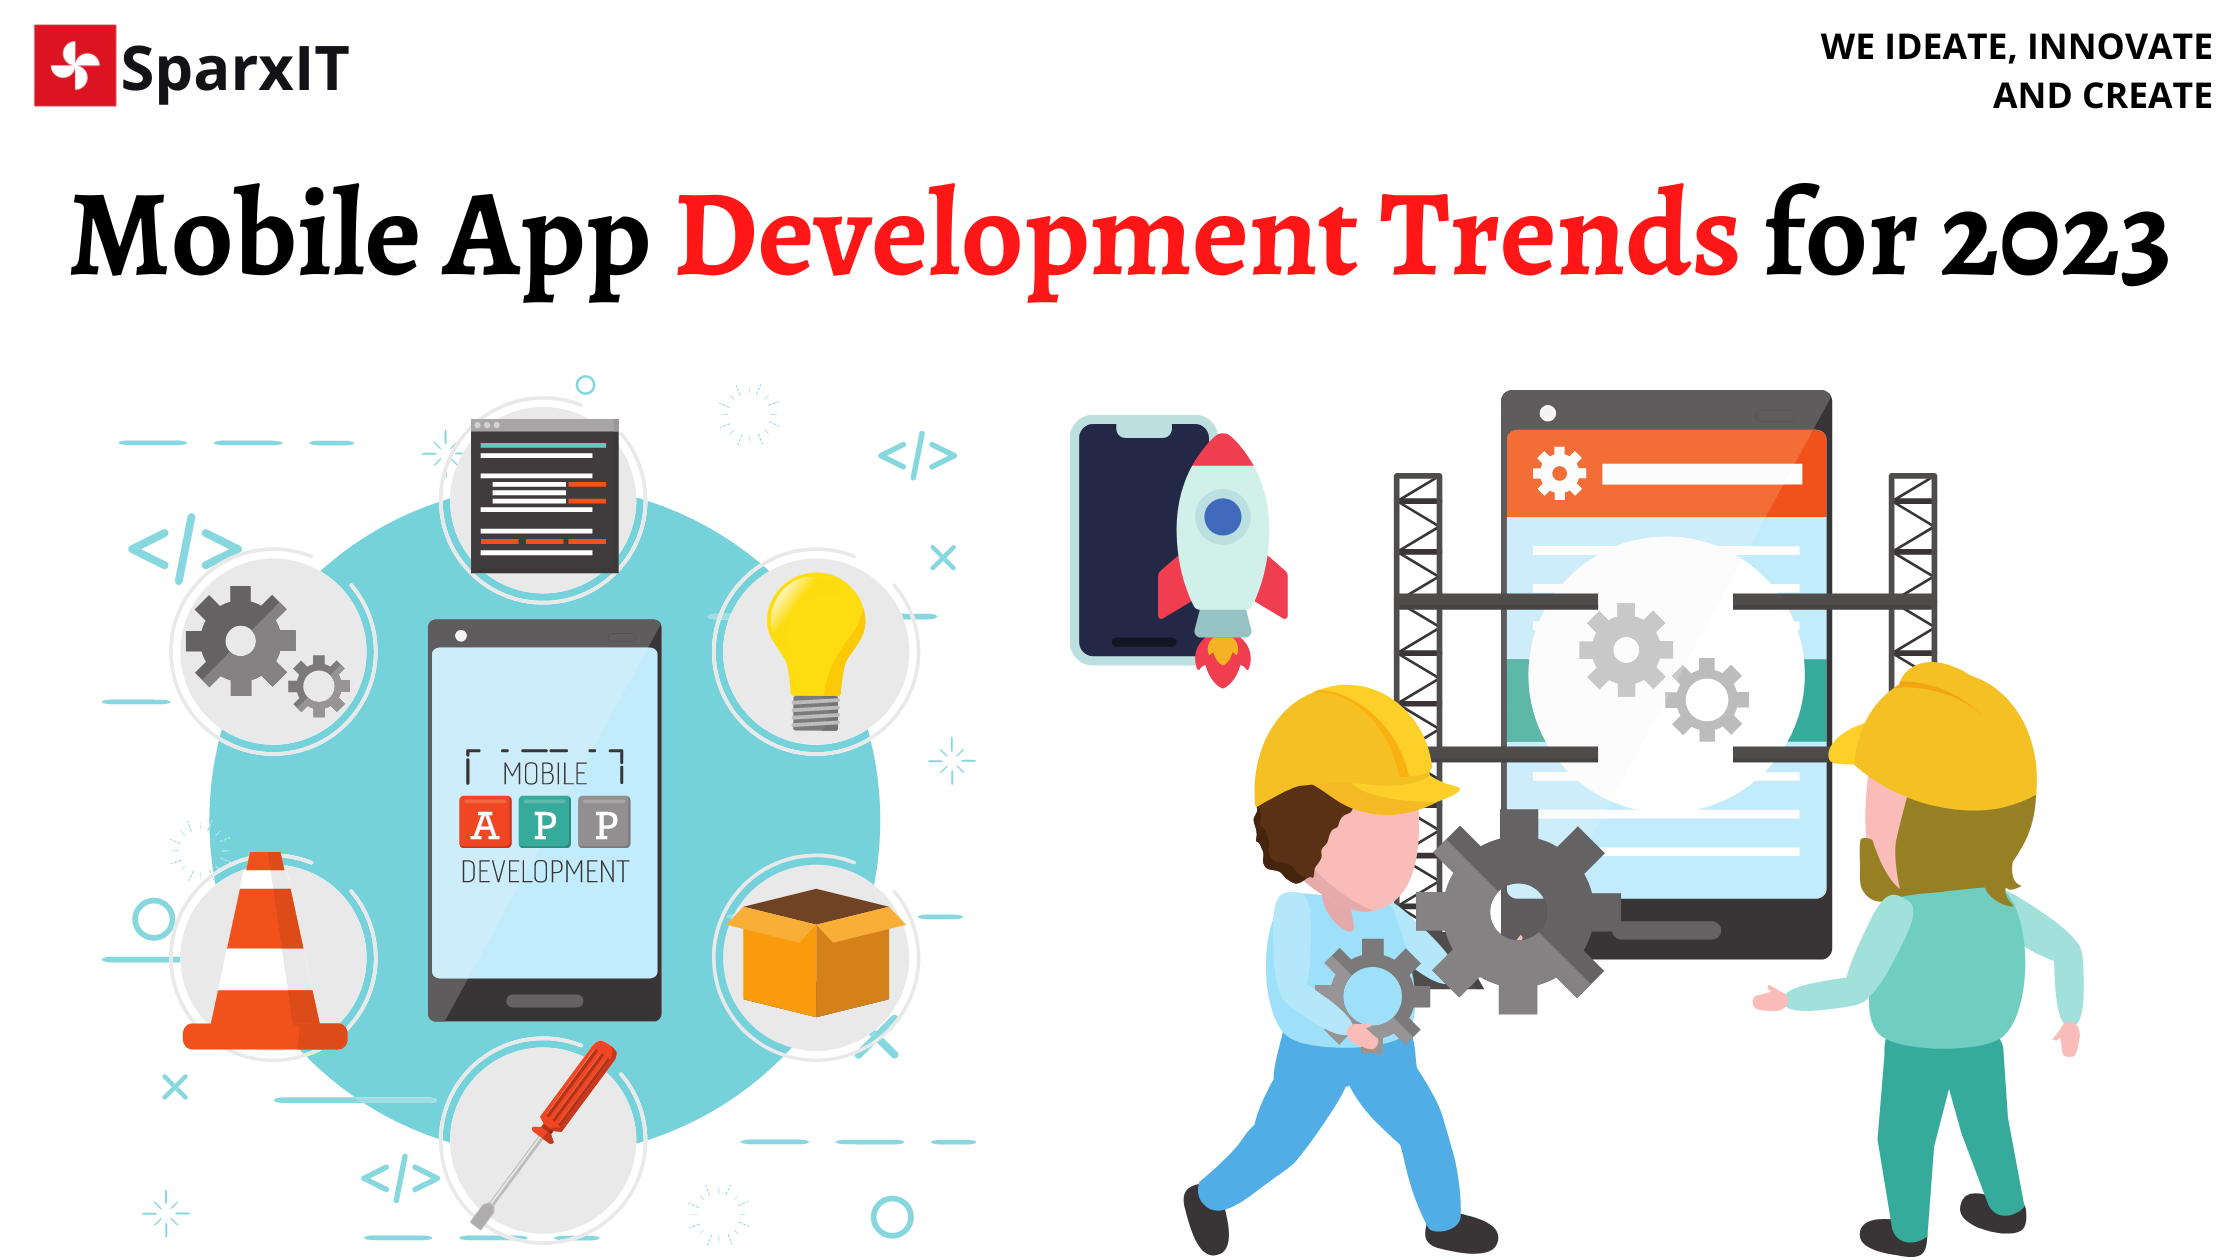 Mobile App Development Trends for 2023